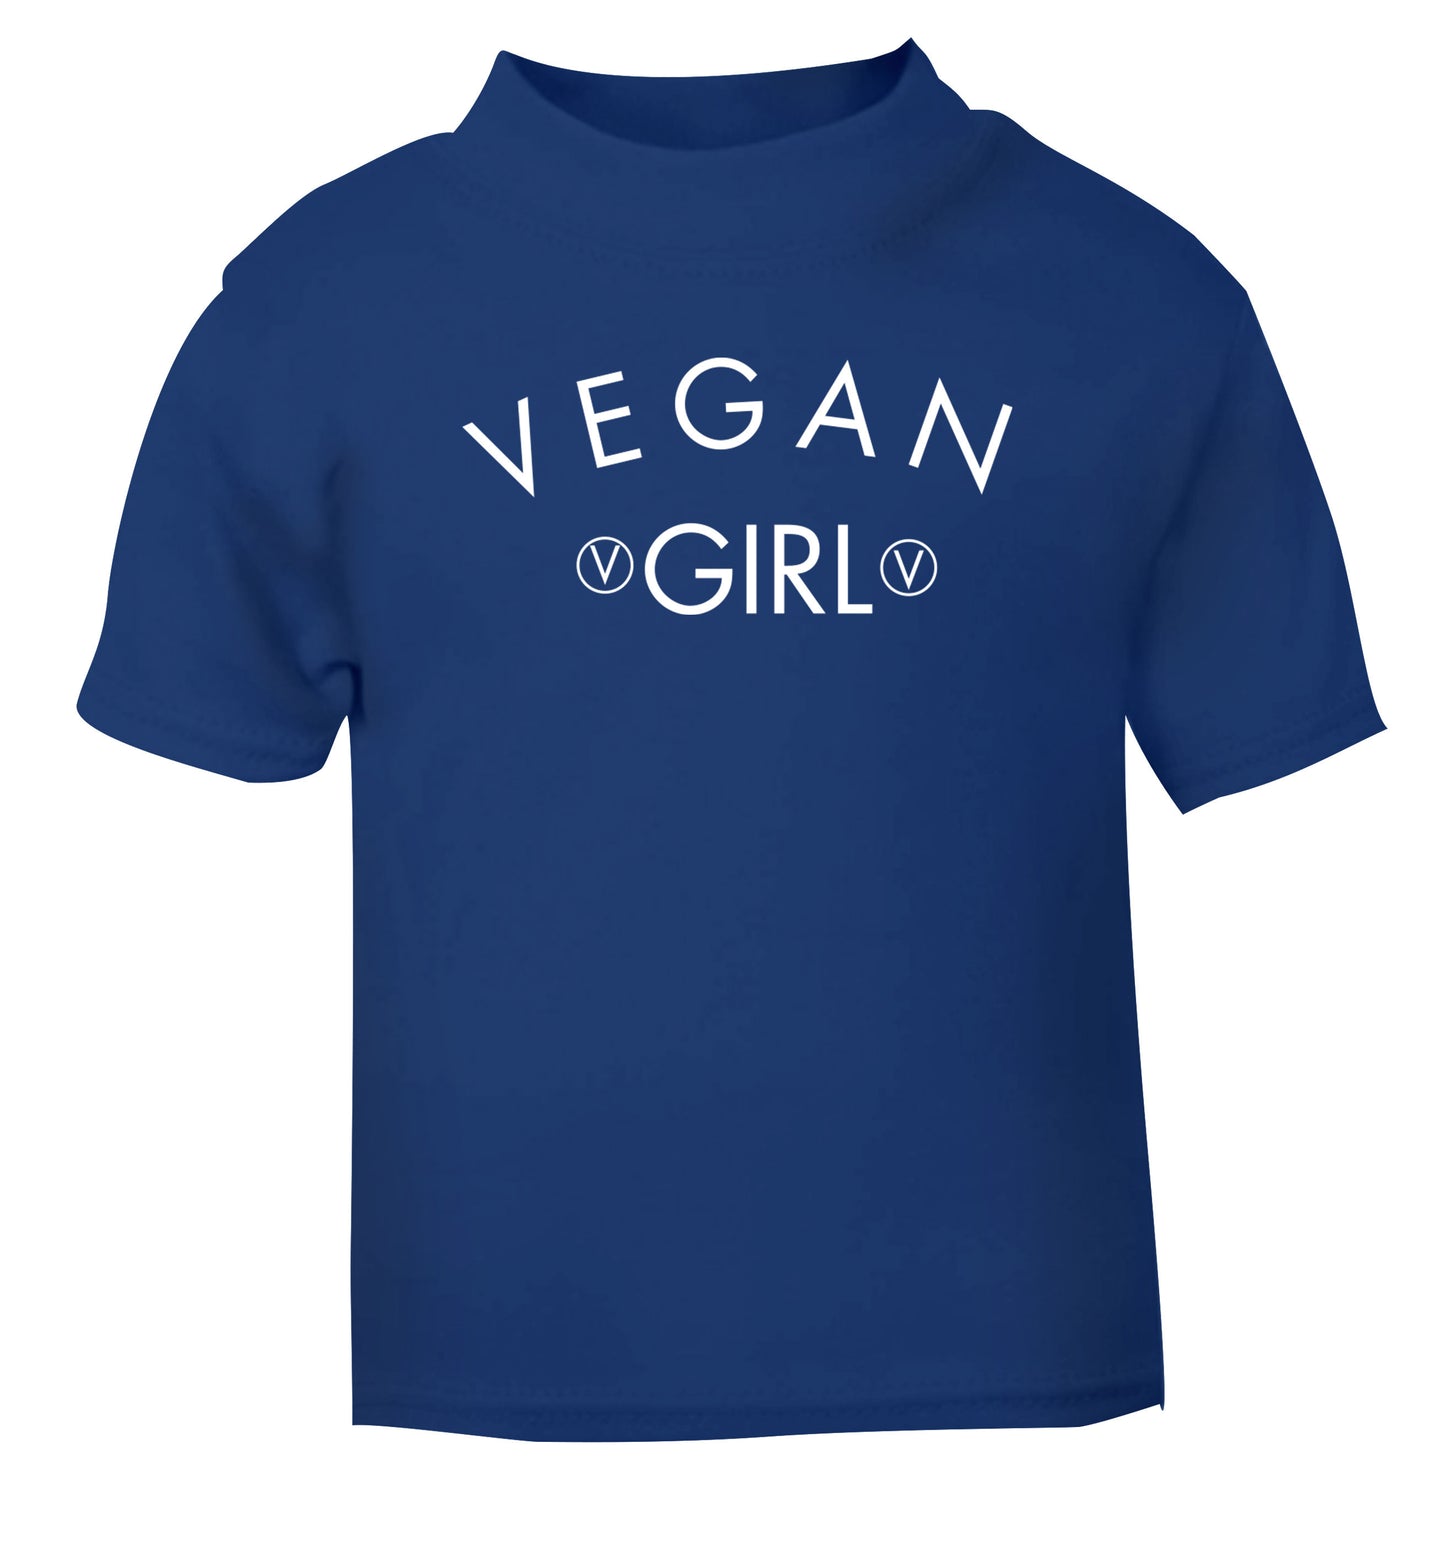 Vegan girl blue Baby Toddler Tshirt 2 Years